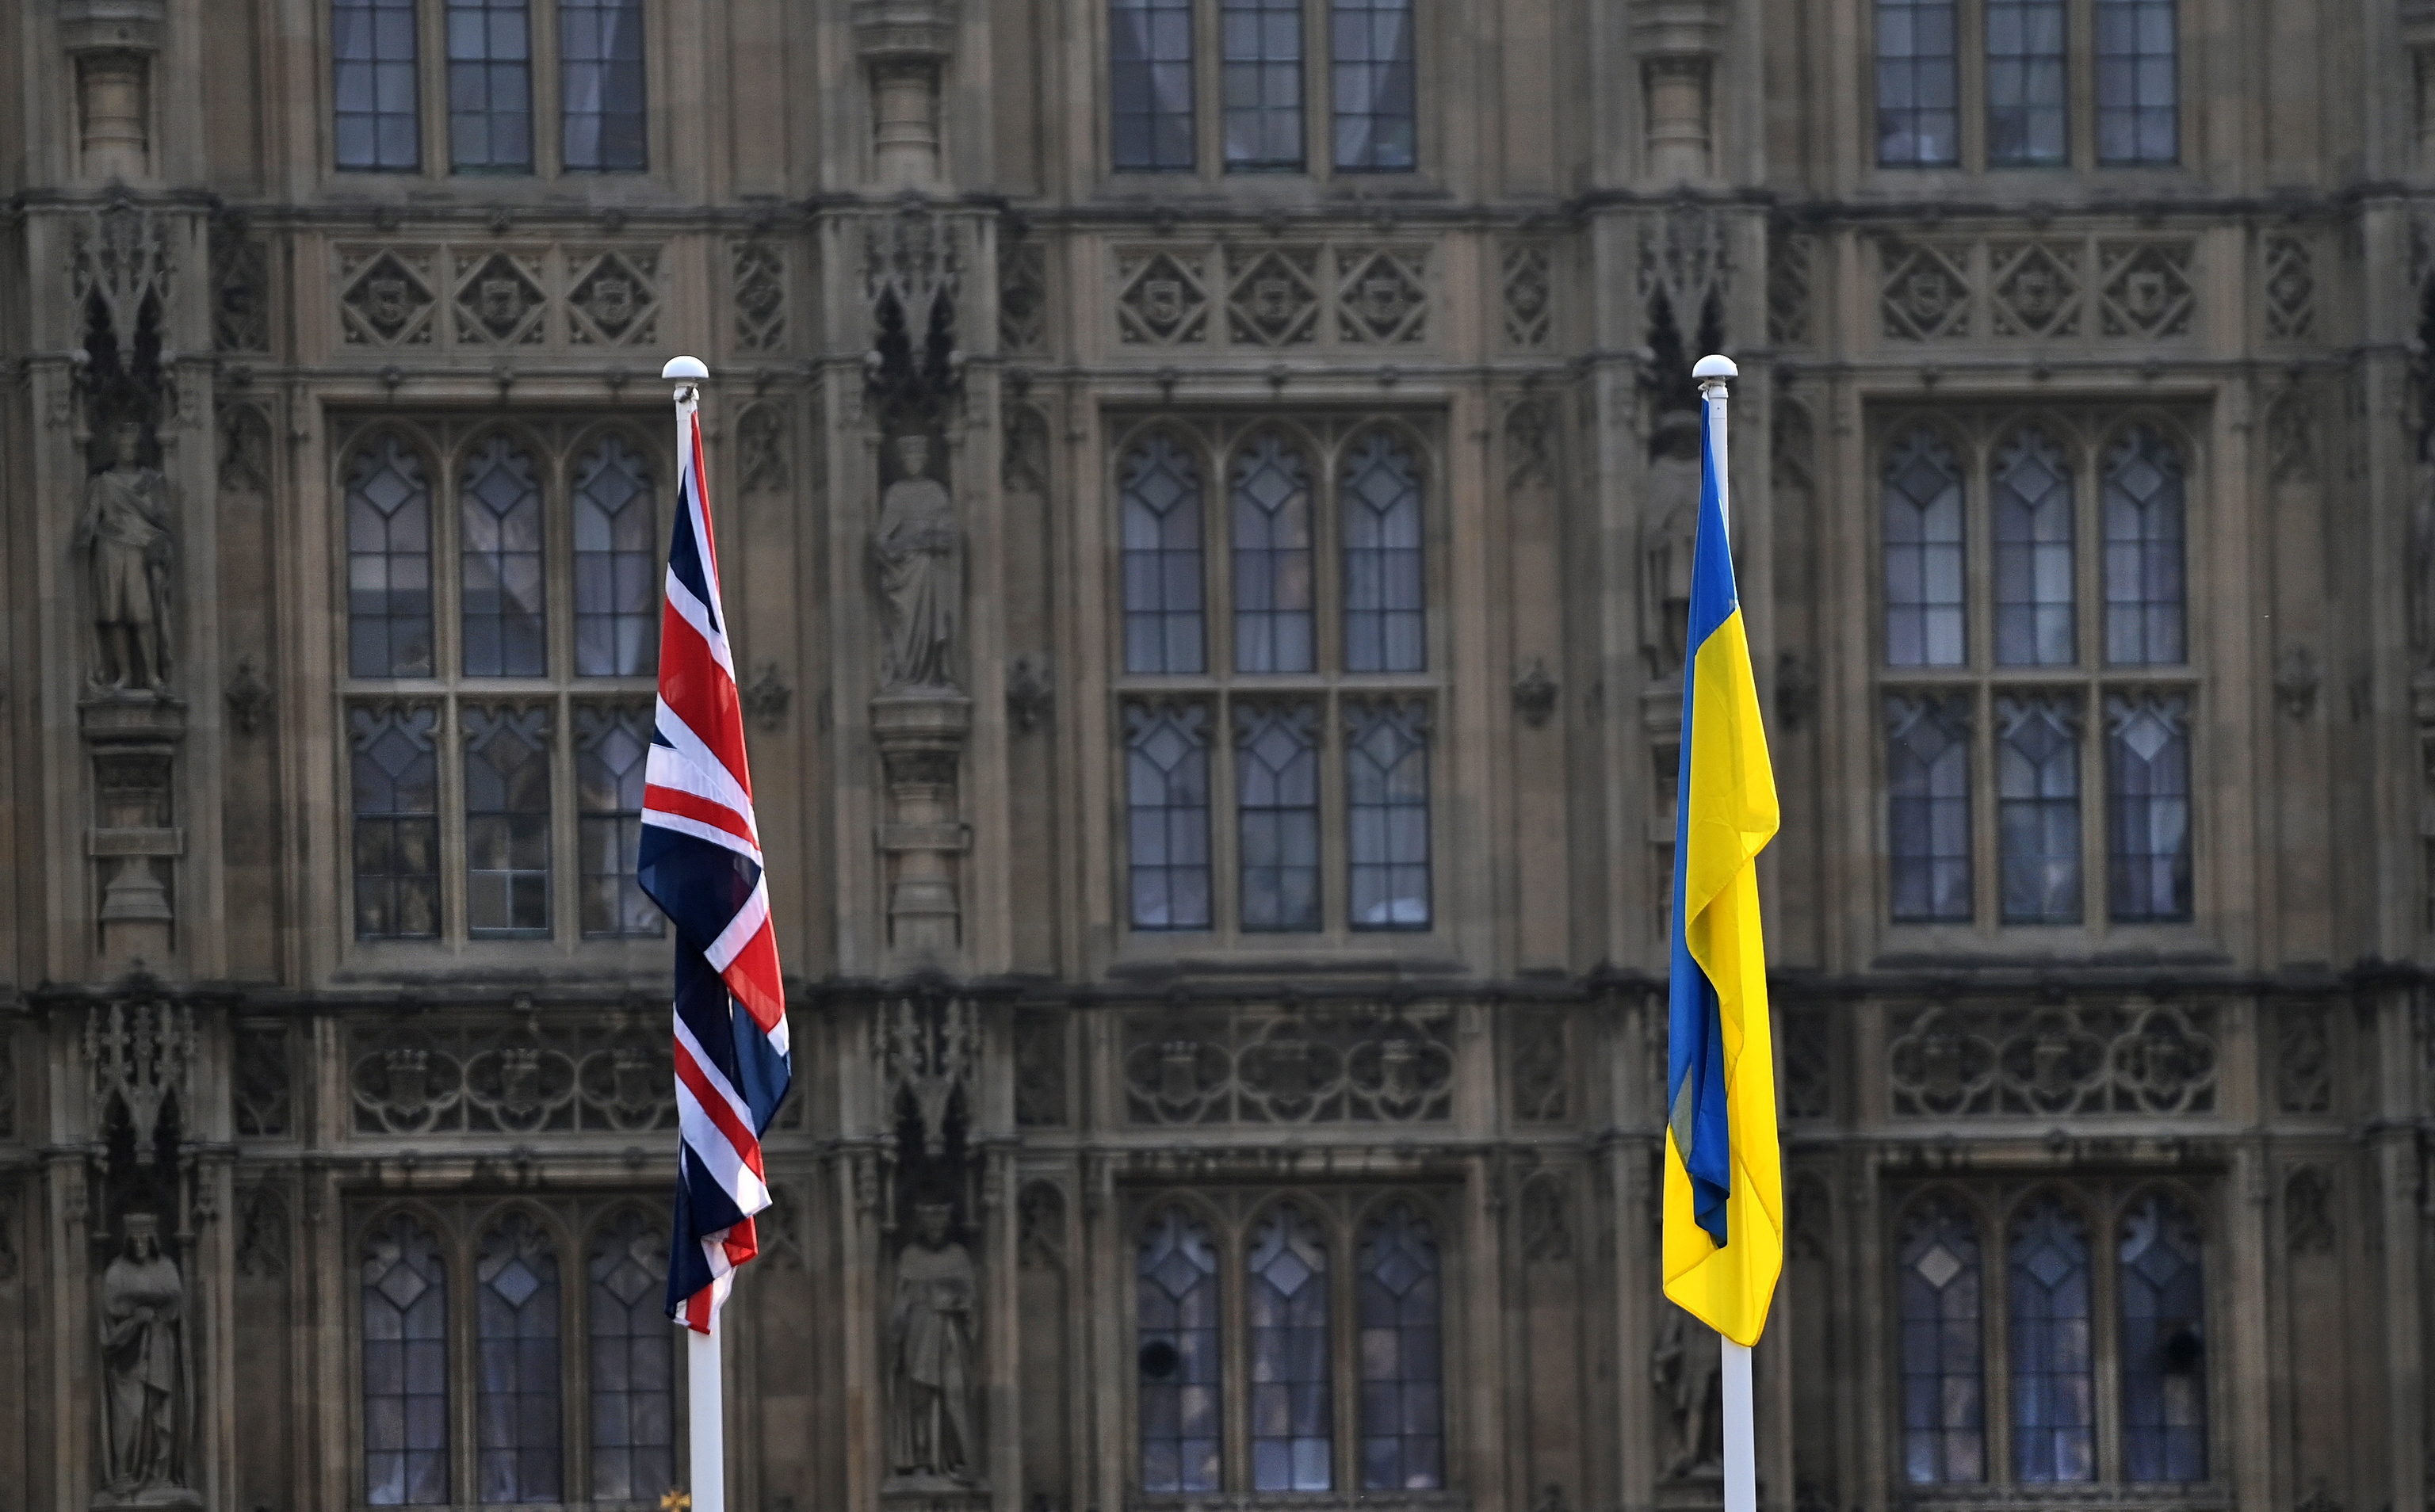 Johnson impulsa un "plan de acción" internacional de apoyo a Ucrania | Internacional